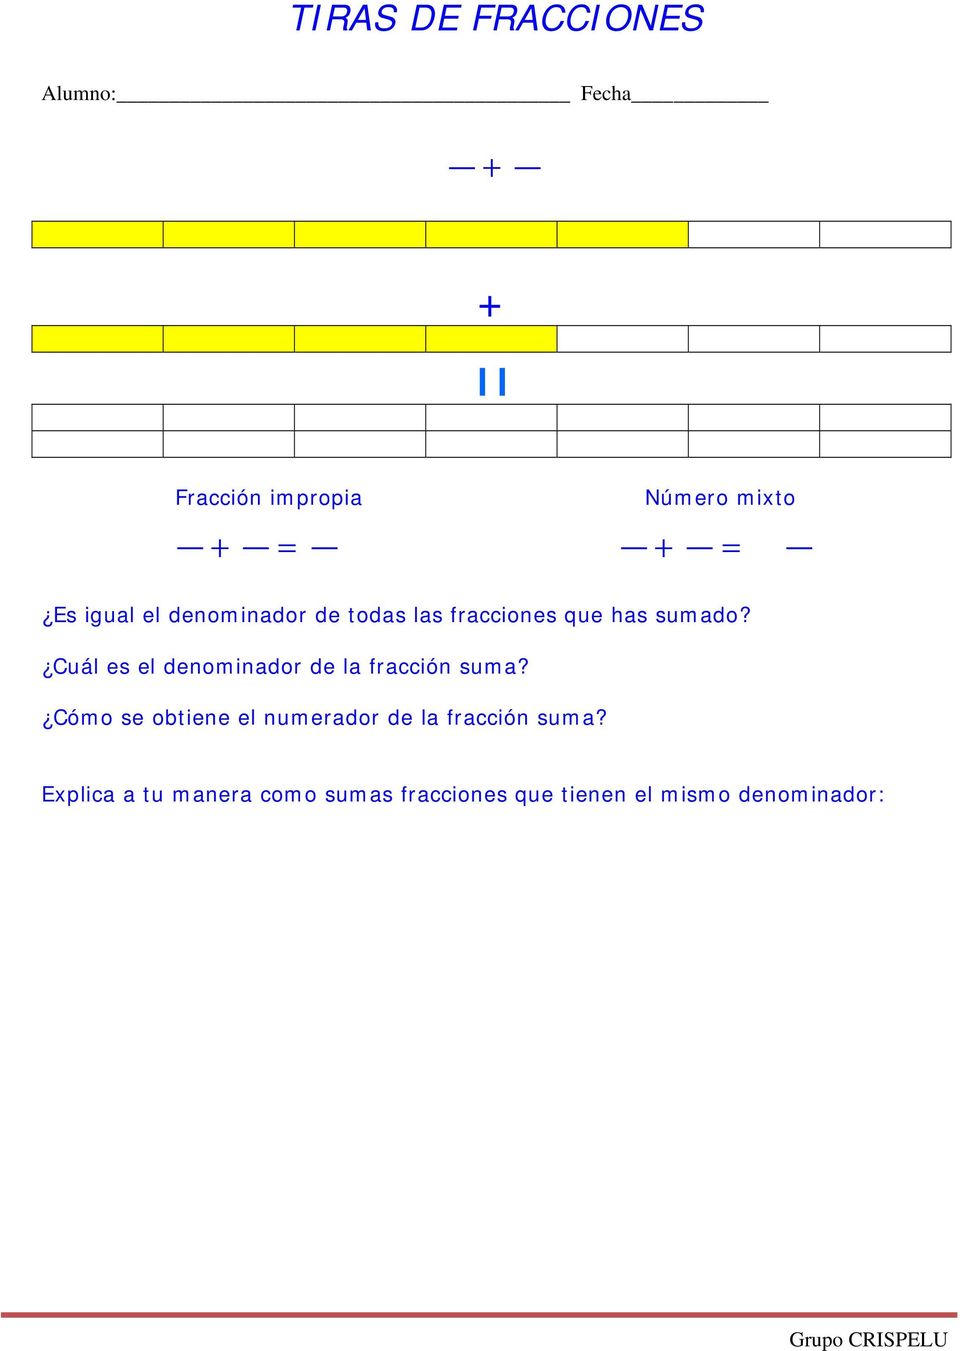 Cuál es el denominador de la fracción suma?